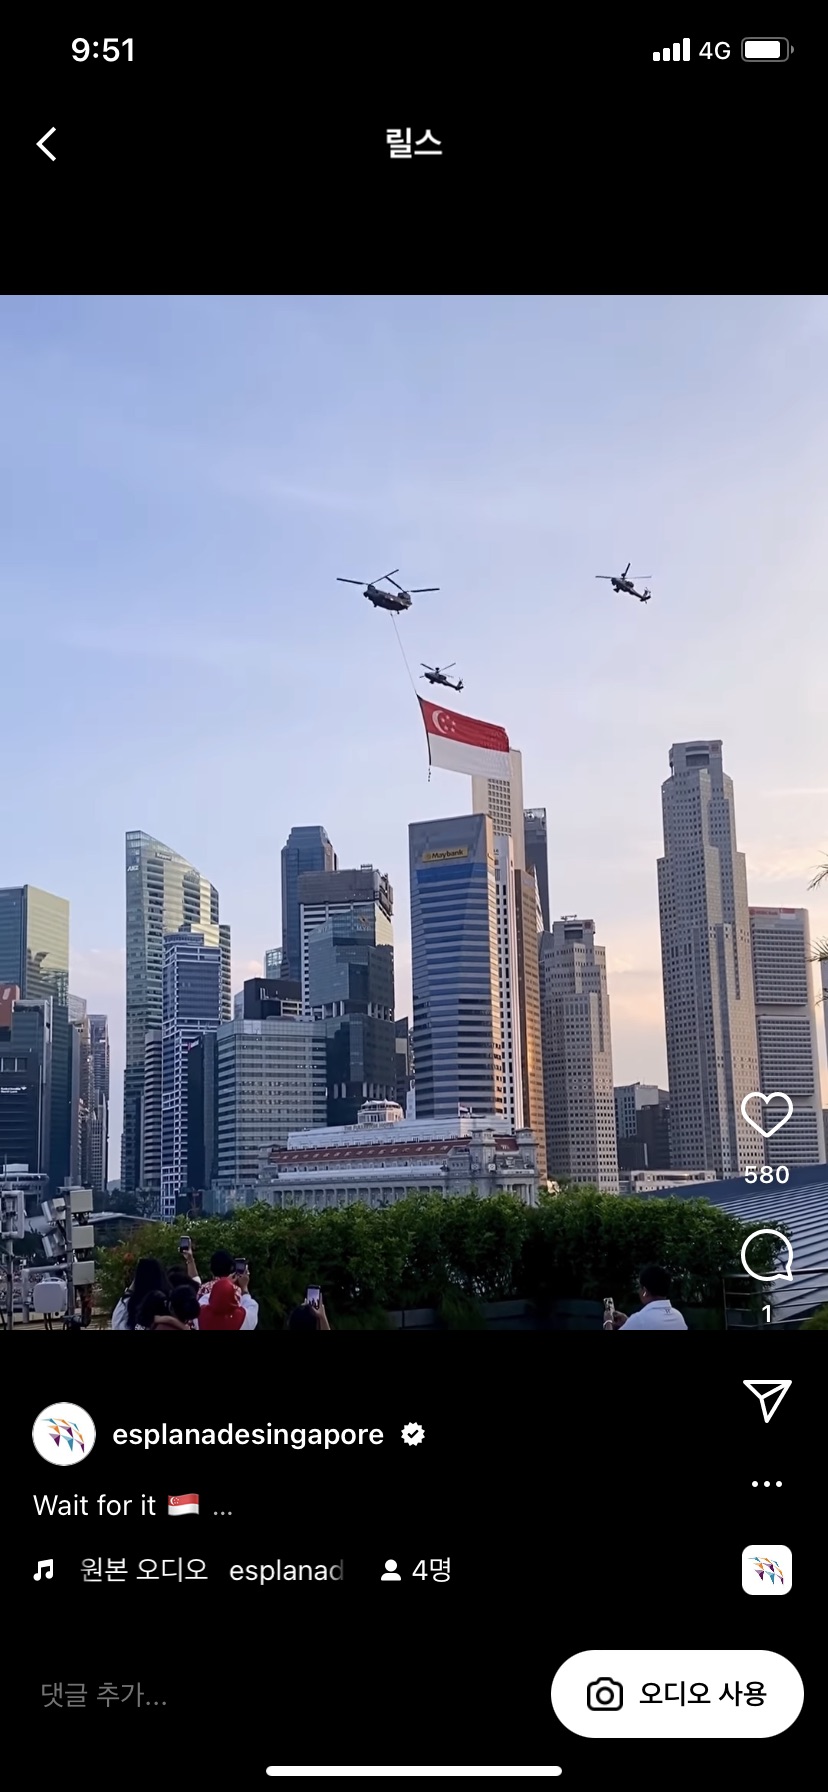 < 국경일 기념 헬리콥터 행진 사진 - 출처: 정부 공식 국경일 행사 인스타그램 계정(@esplanadesingapore) >